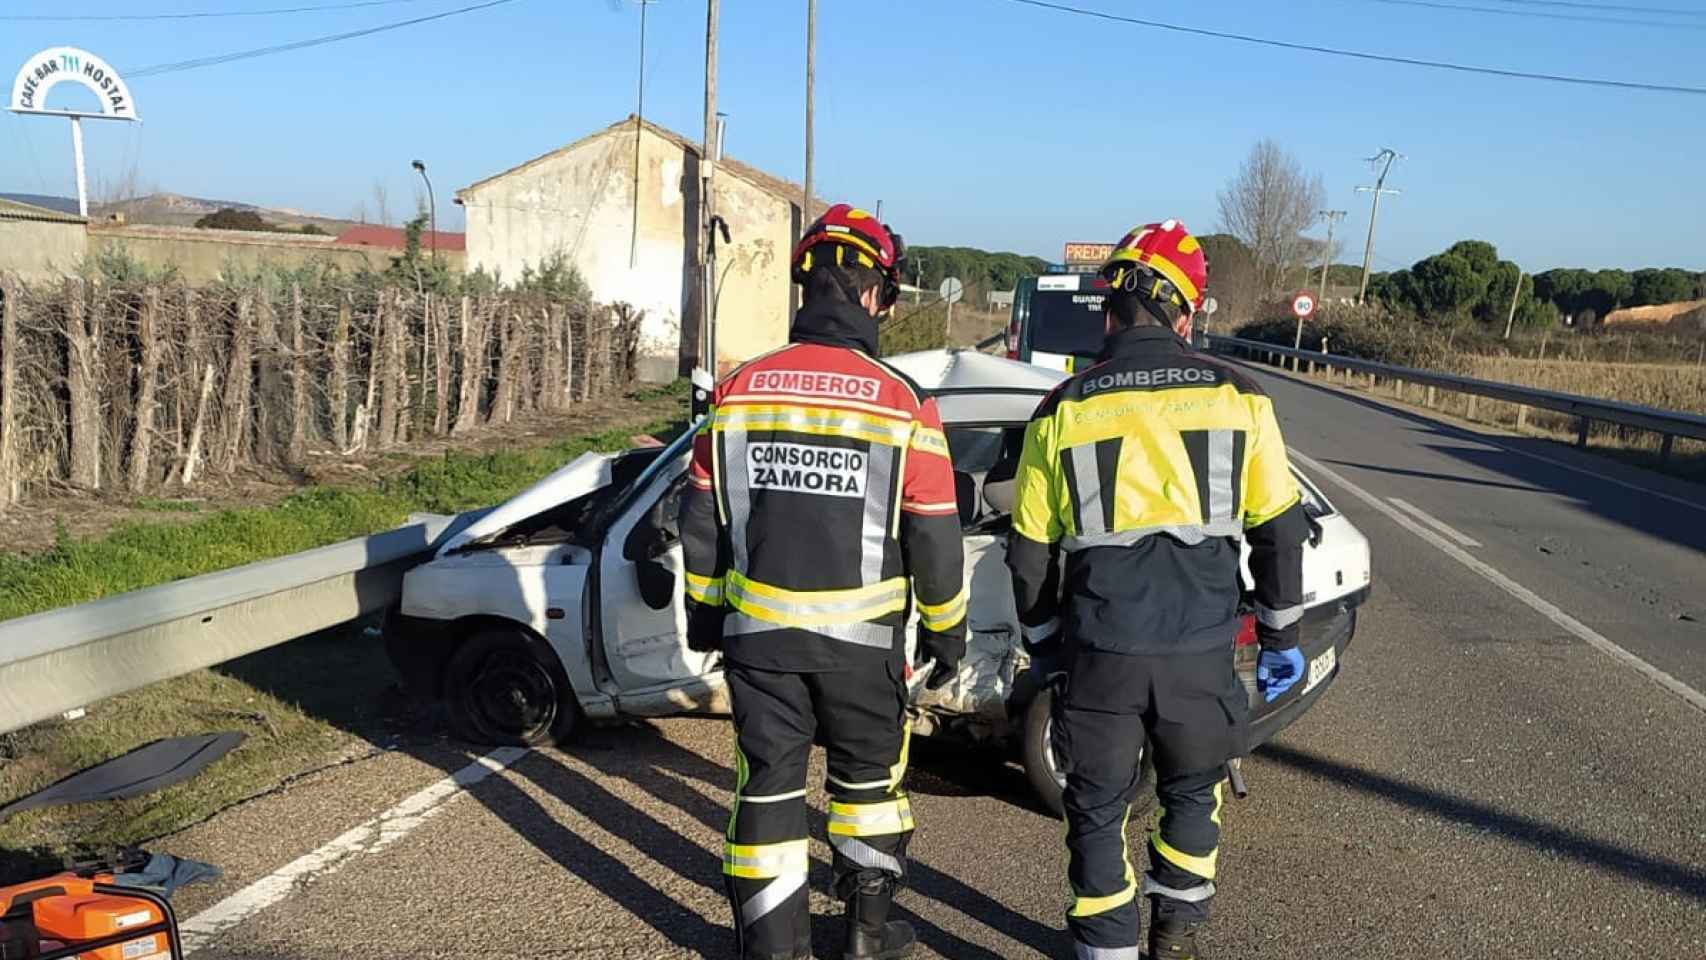 Imagen del accidente de este sábado en Zamora.